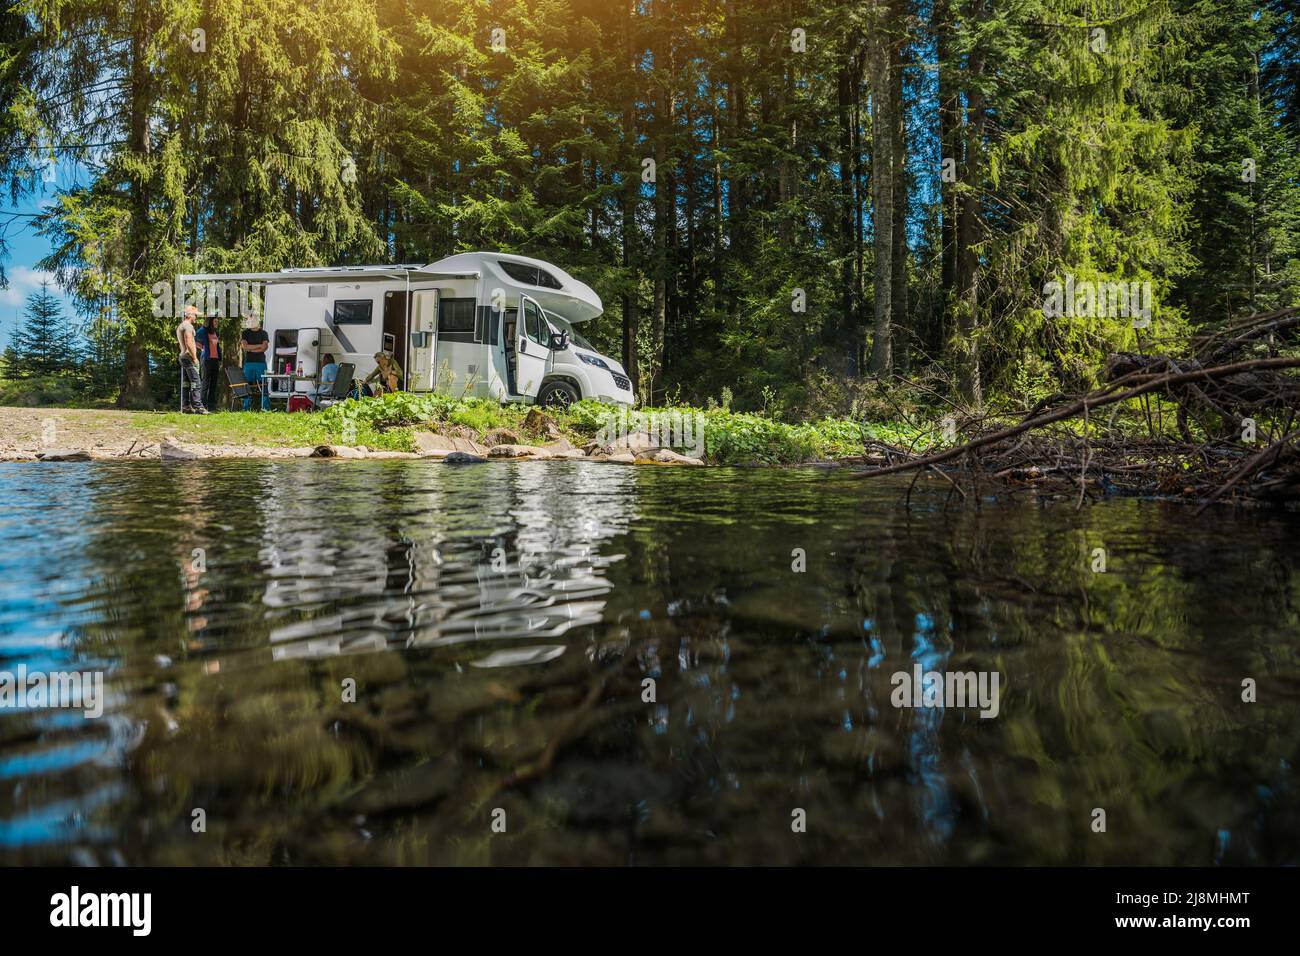 Début d'été Scenic Wild et Dry RV camping-car Van Camping avec des amis. Les Caucasiens dans leur 40s à côté d'un véhicule de plaisance et de la rivière. Banque D'Images